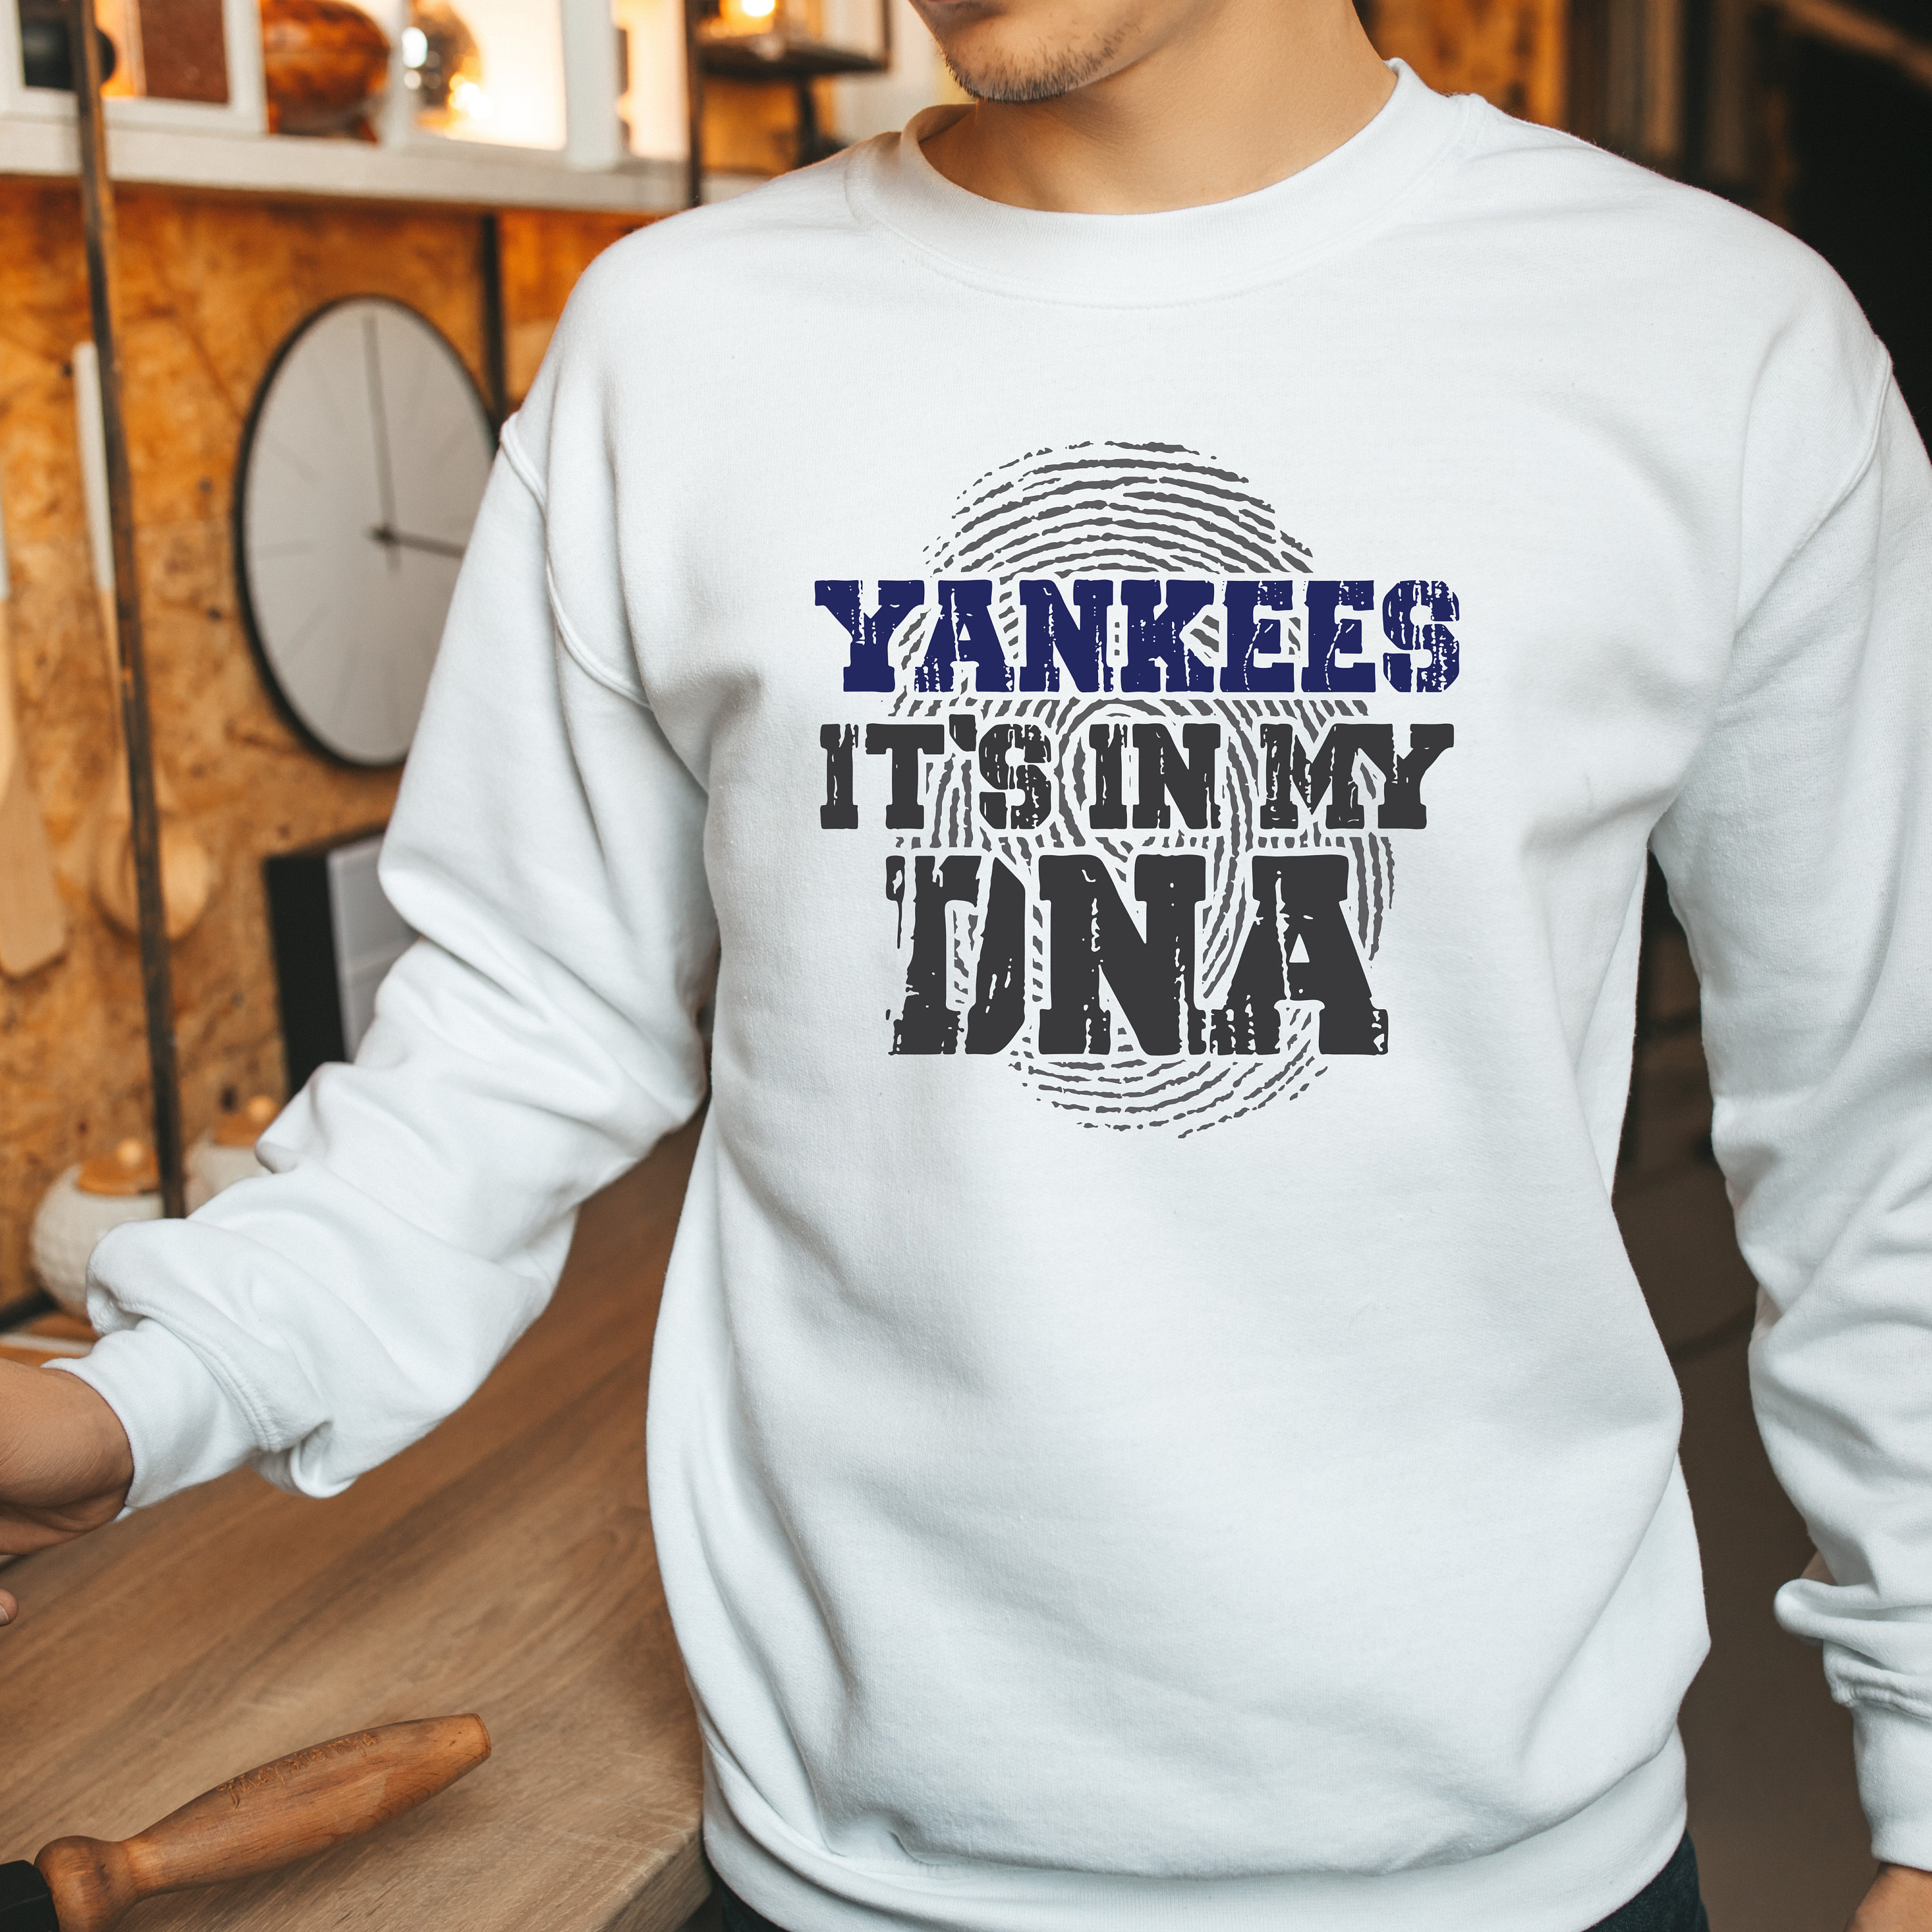 Womens Yankees Shirt 